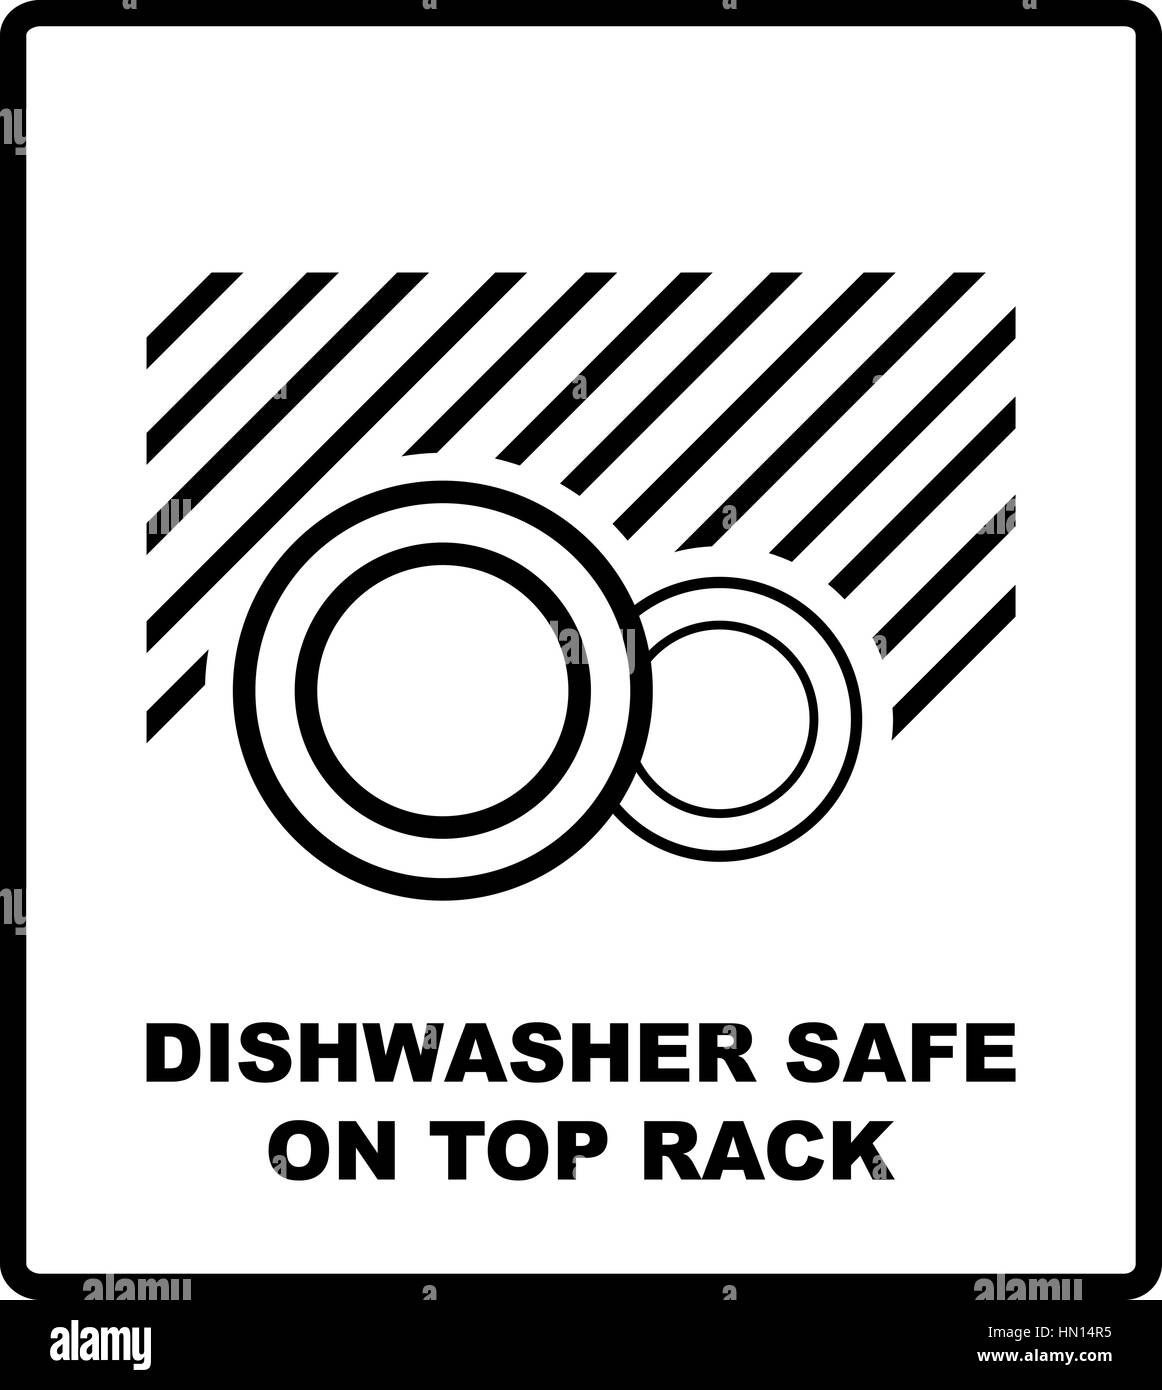 https://c8.alamy.com/comp/HN14R5/dishwasher-safe-on-top-rack-symbol-isolated-dishwasher-safe-sign-isolated-HN14R5.jpg